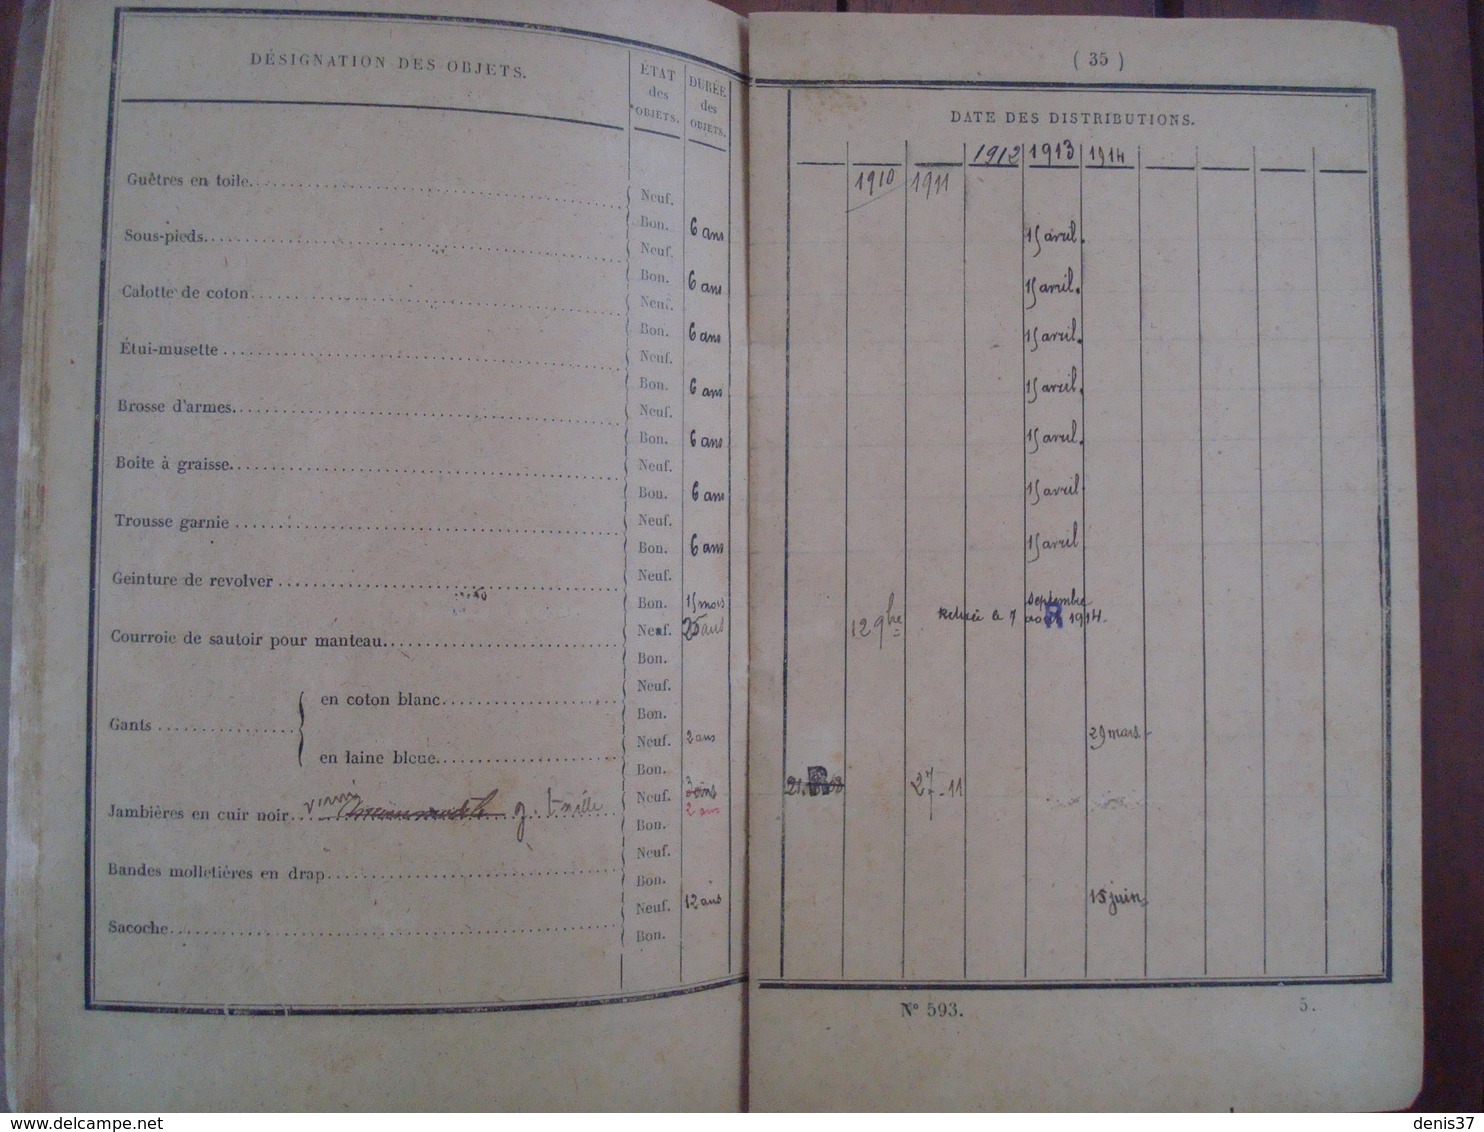 Livrets Service des Douanes 1872 et 1908.